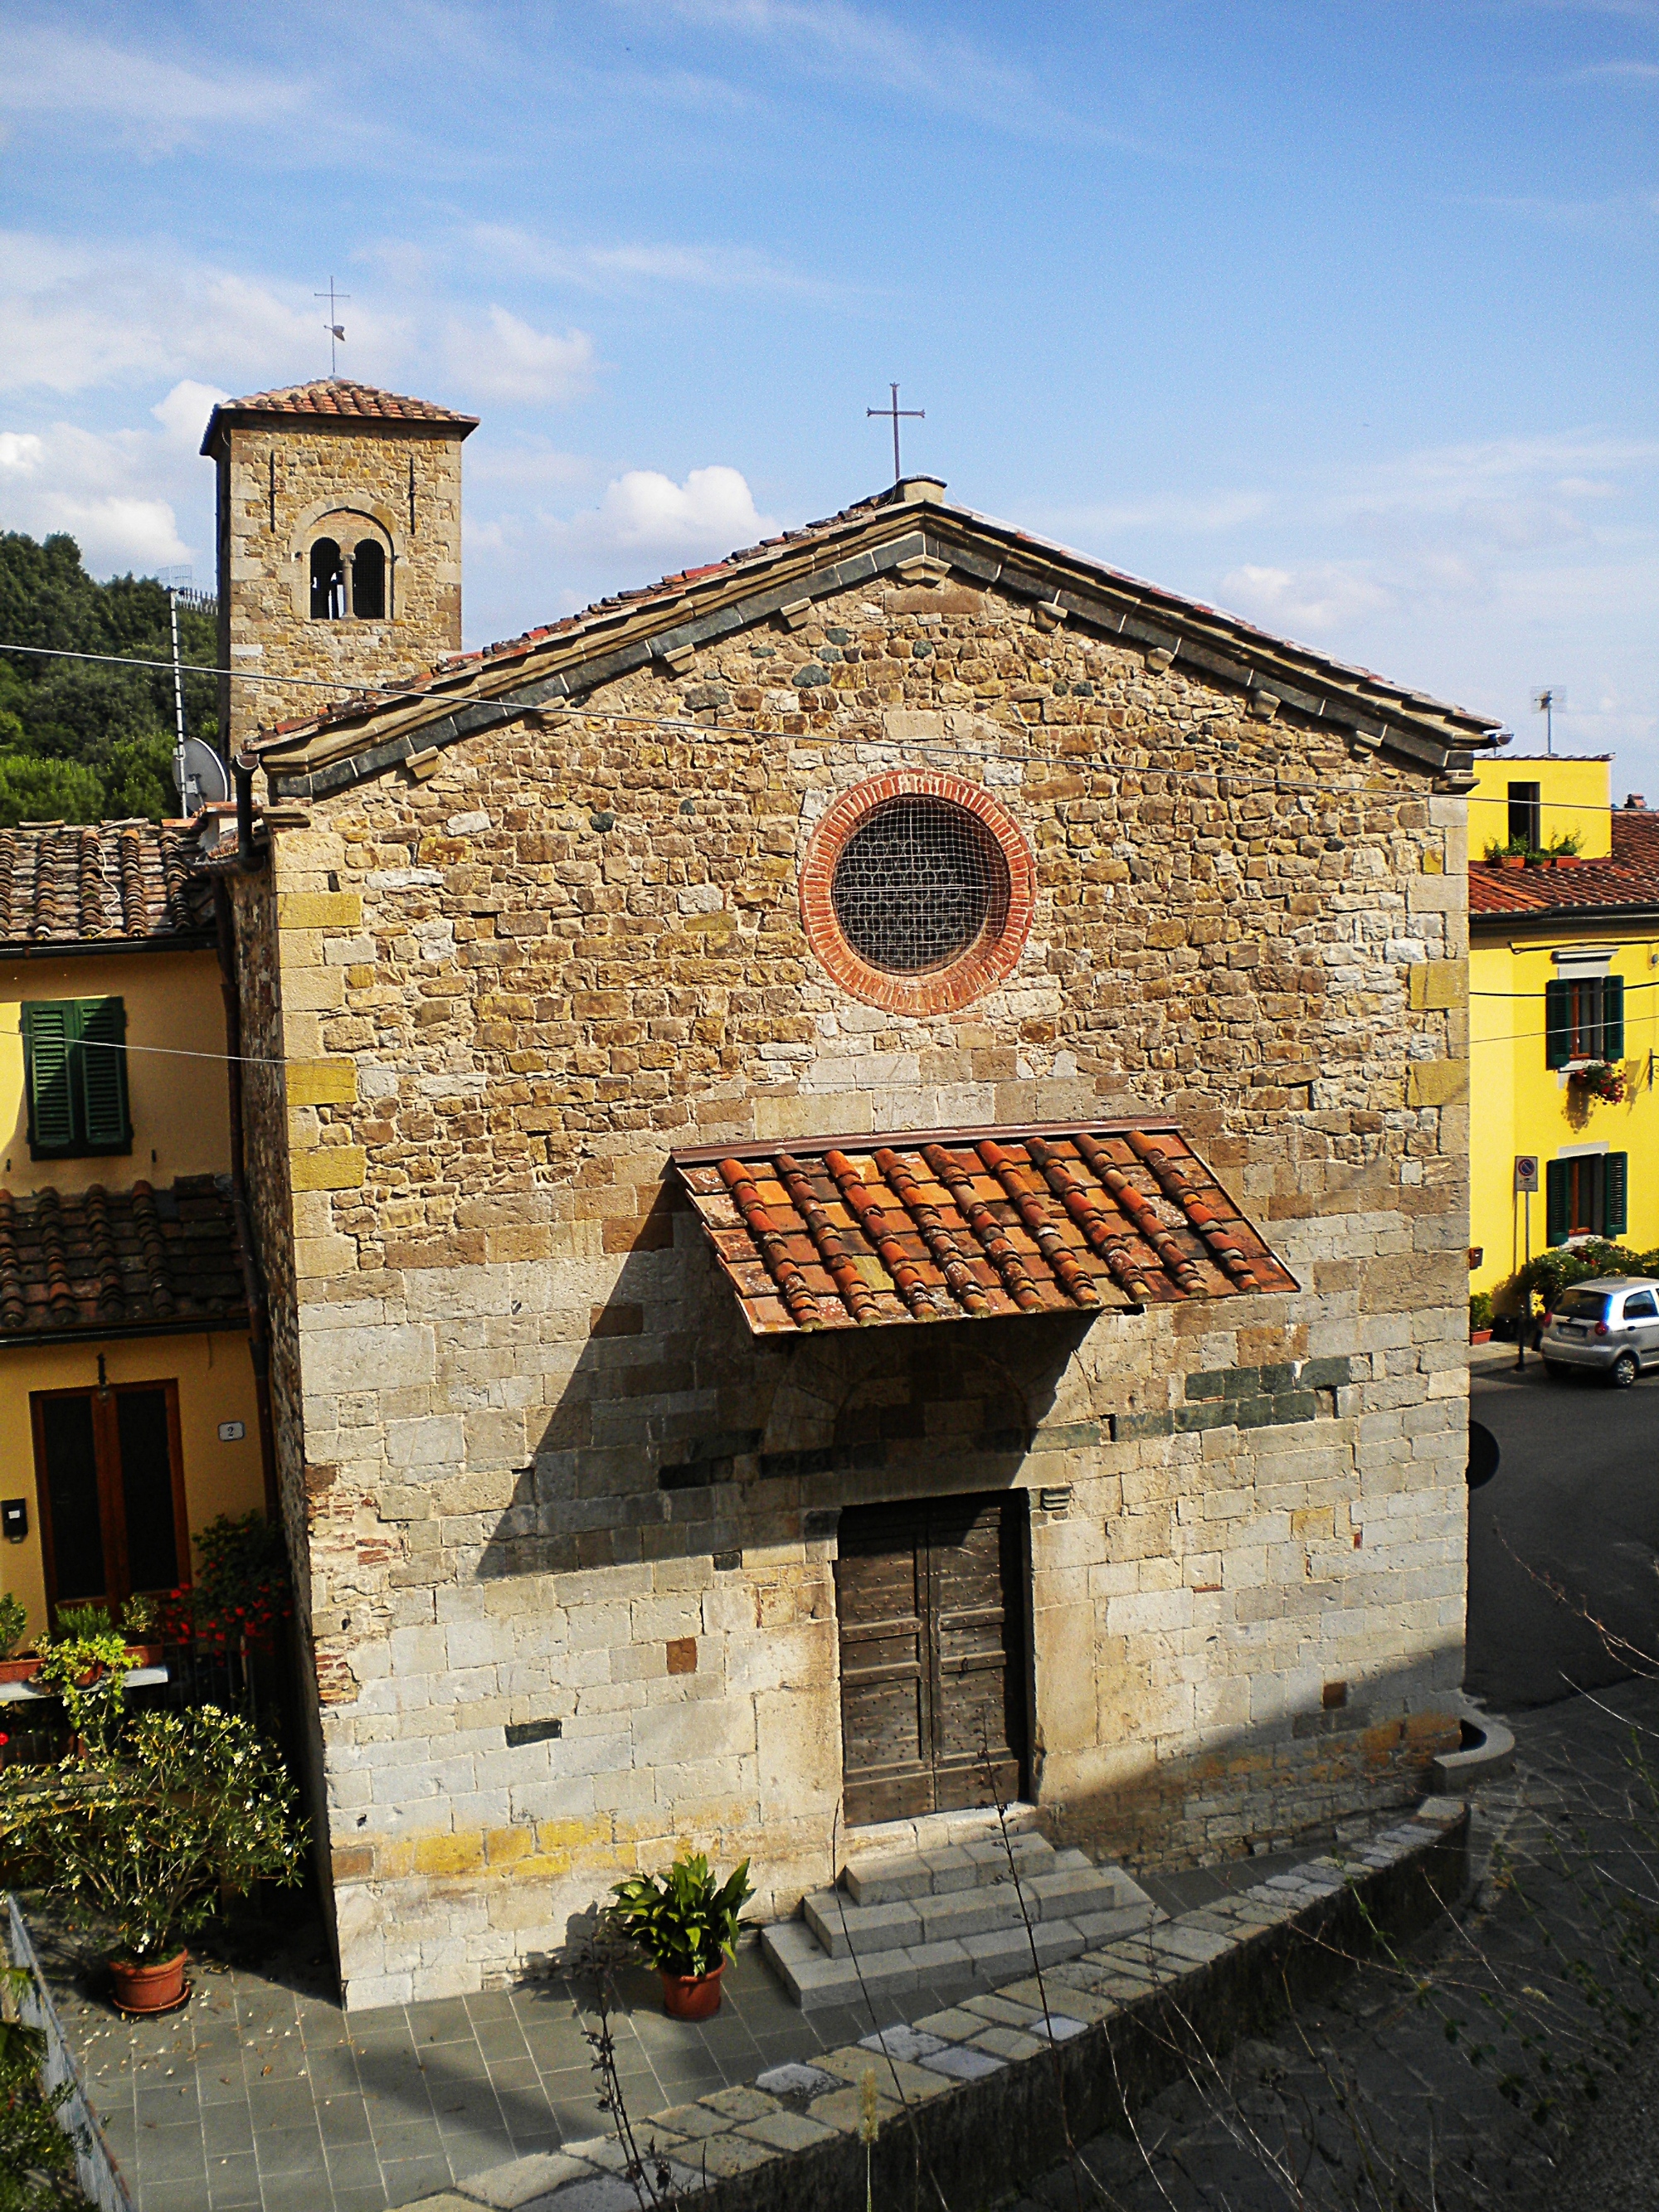 The Pieve di San Pietro